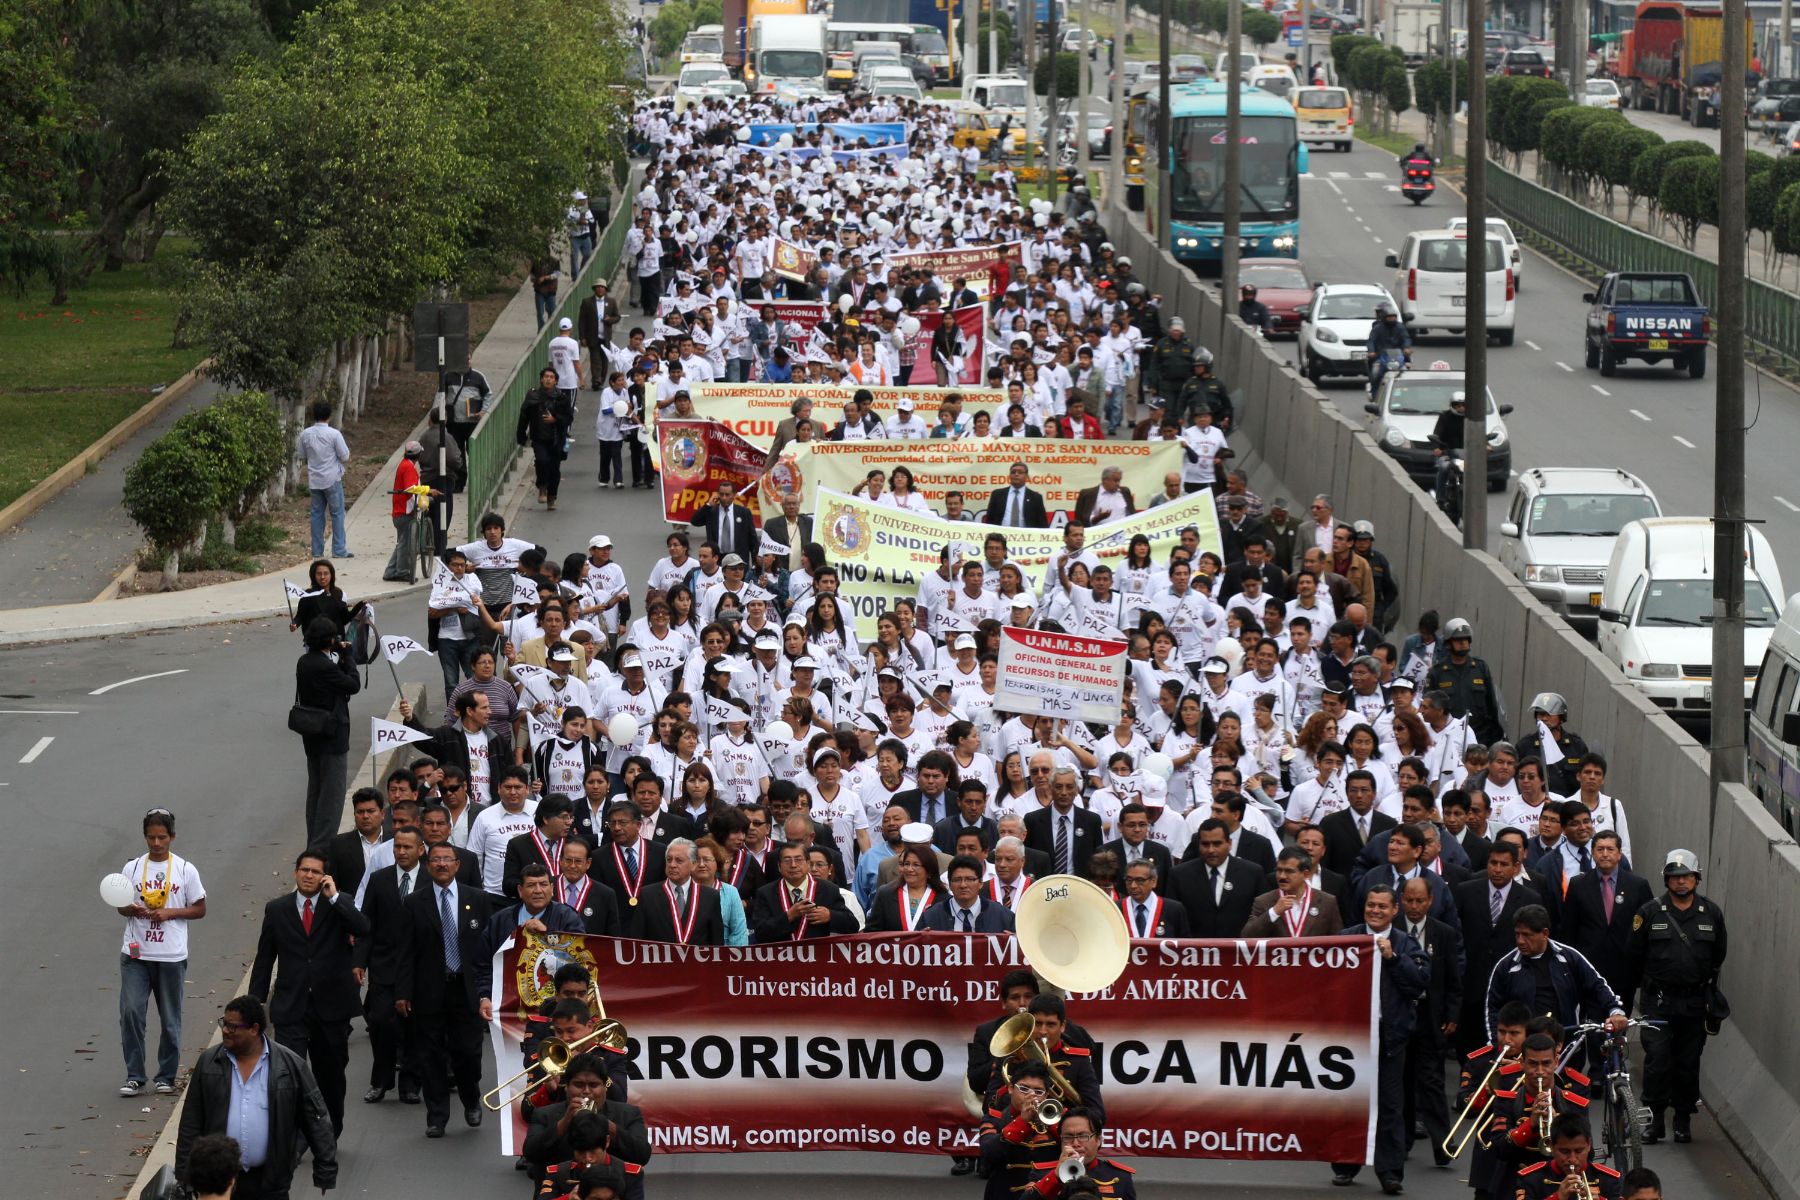 Juventud peruana dio “lección de ciudadanía” con marcha contra el terrorismo | Noticias | Agencia Peruana de Noticias Andina